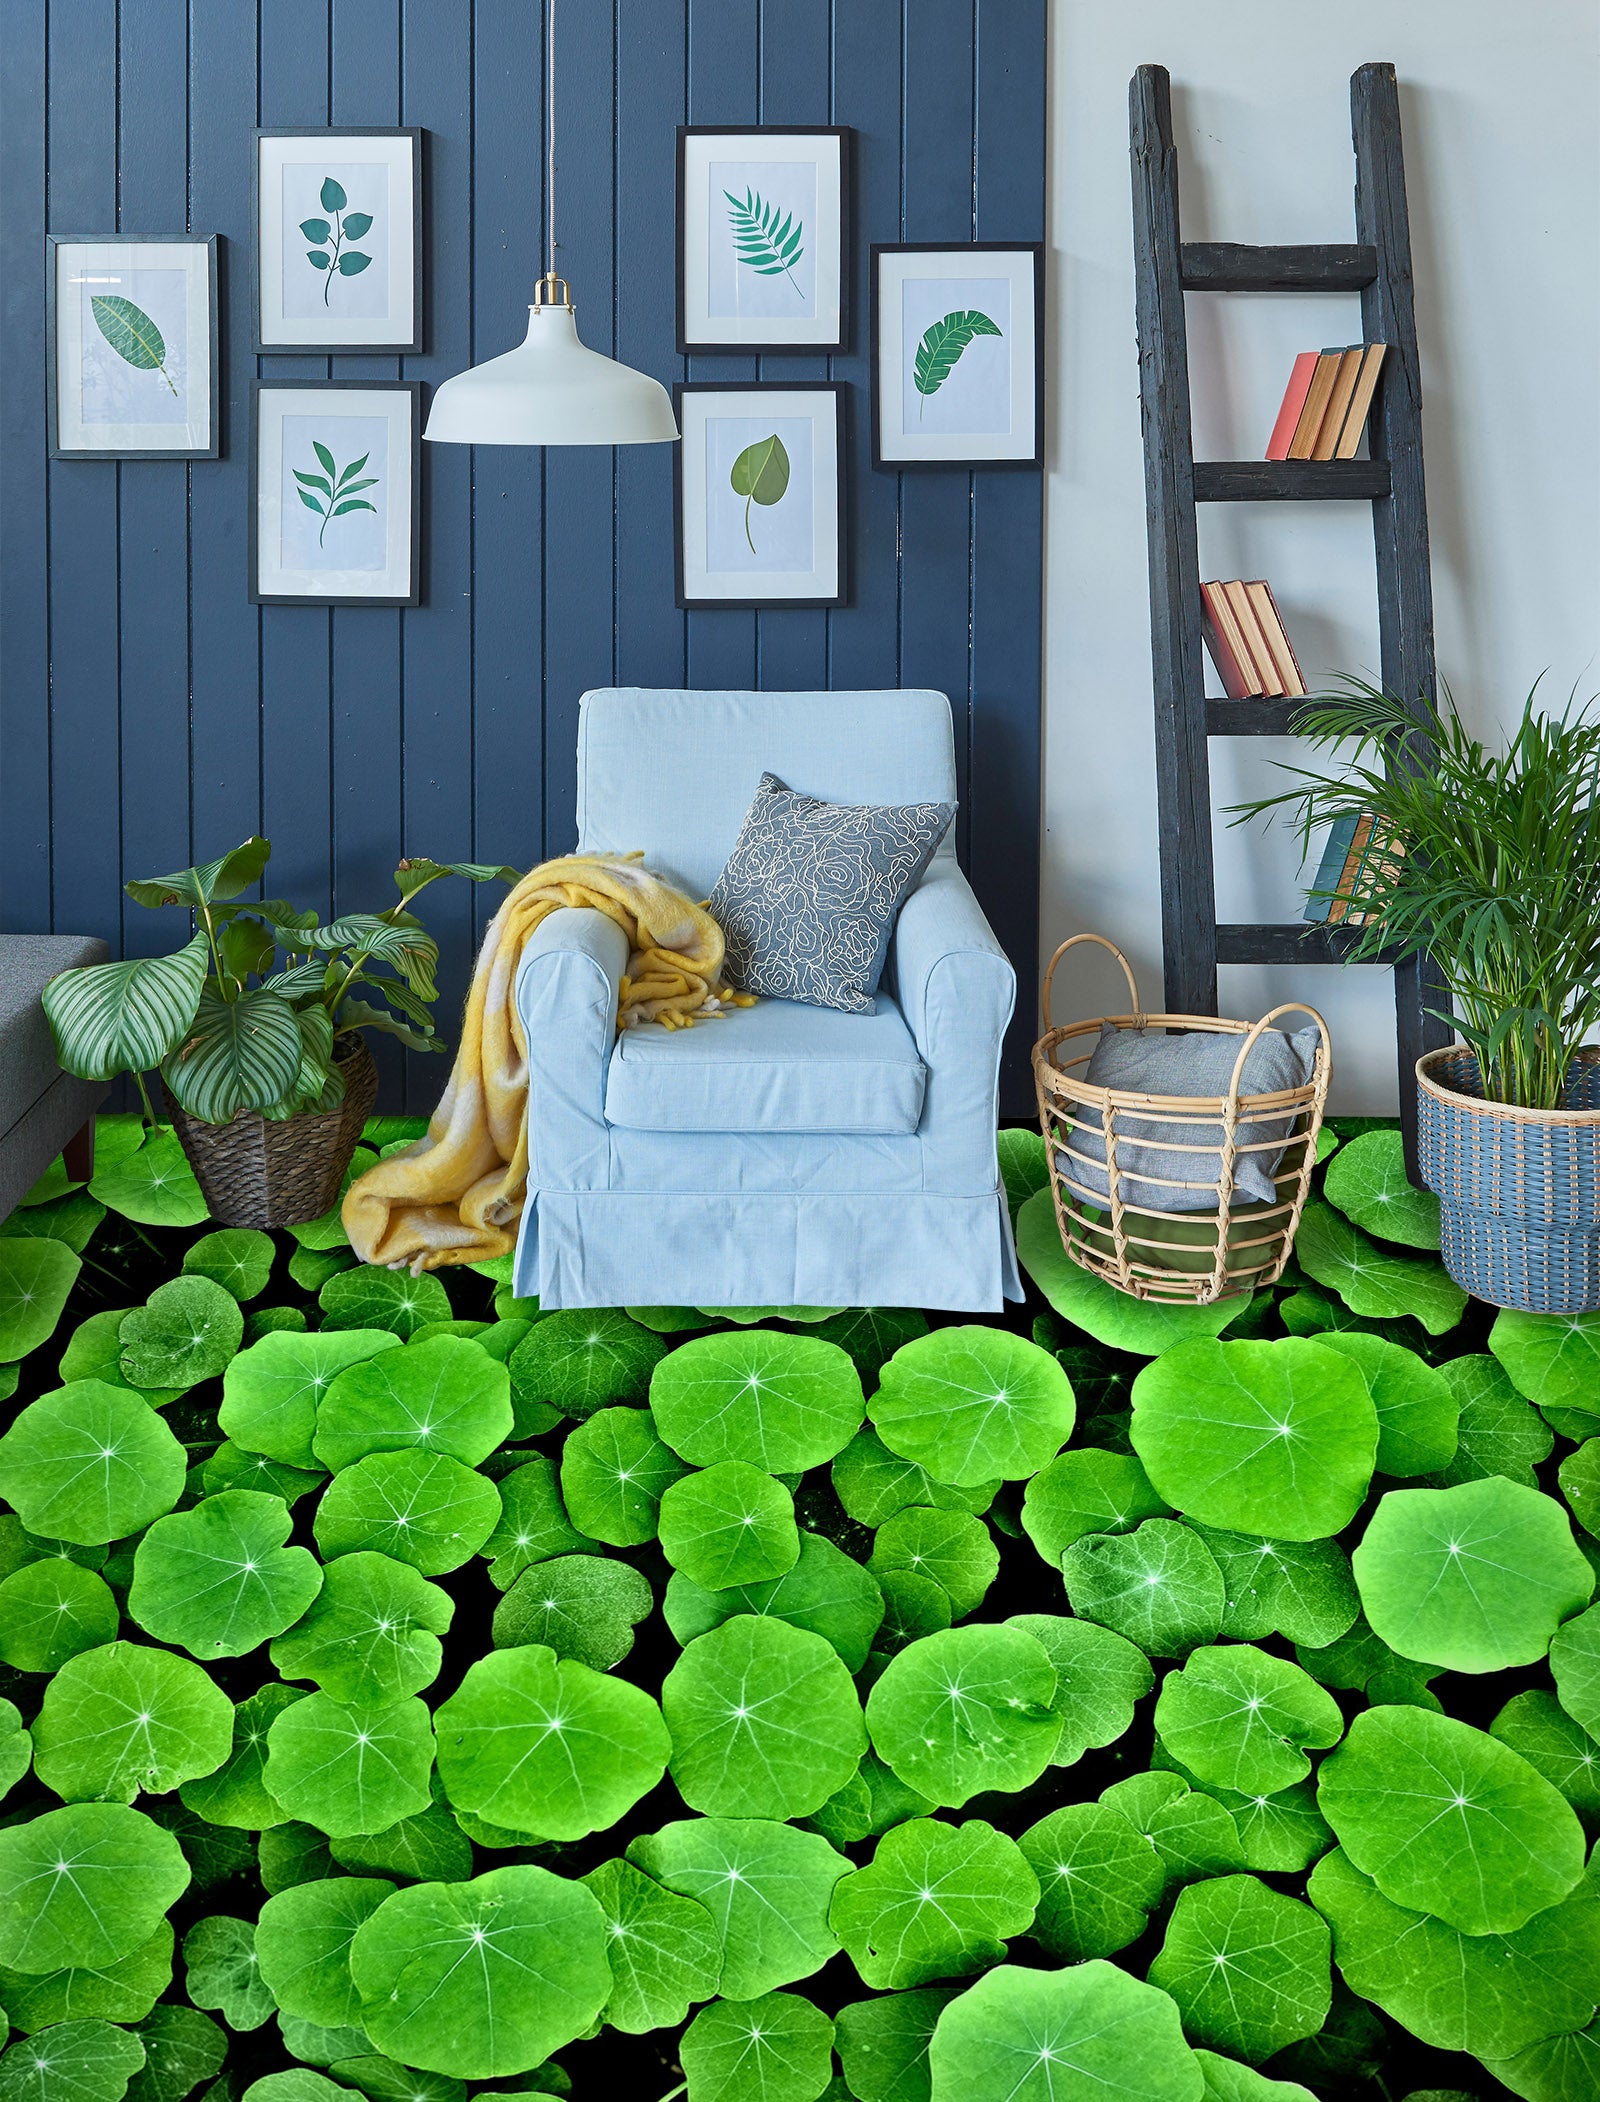 3D Green Lush Duckweed 767 Floor Mural  Wallpaper Murals Rug & Mat Print Epoxy waterproof bath floor